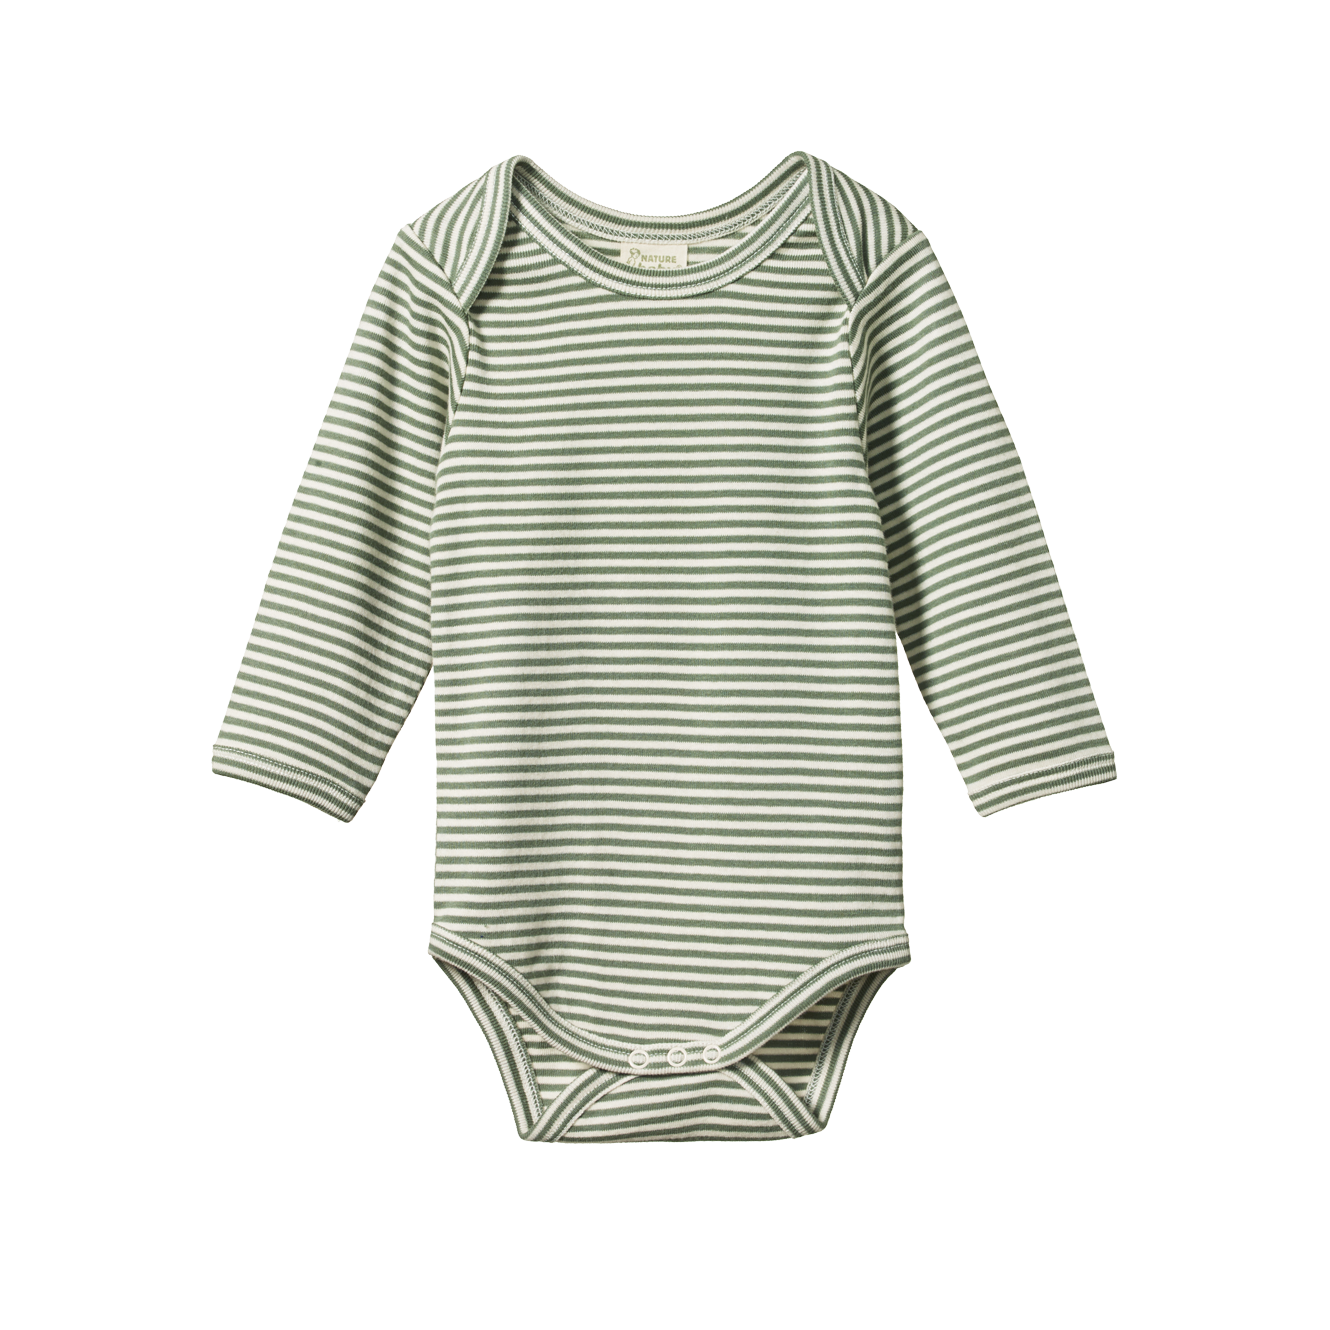 Nature Baby - Long Sleeve Bodysuit - Nettle Stripe